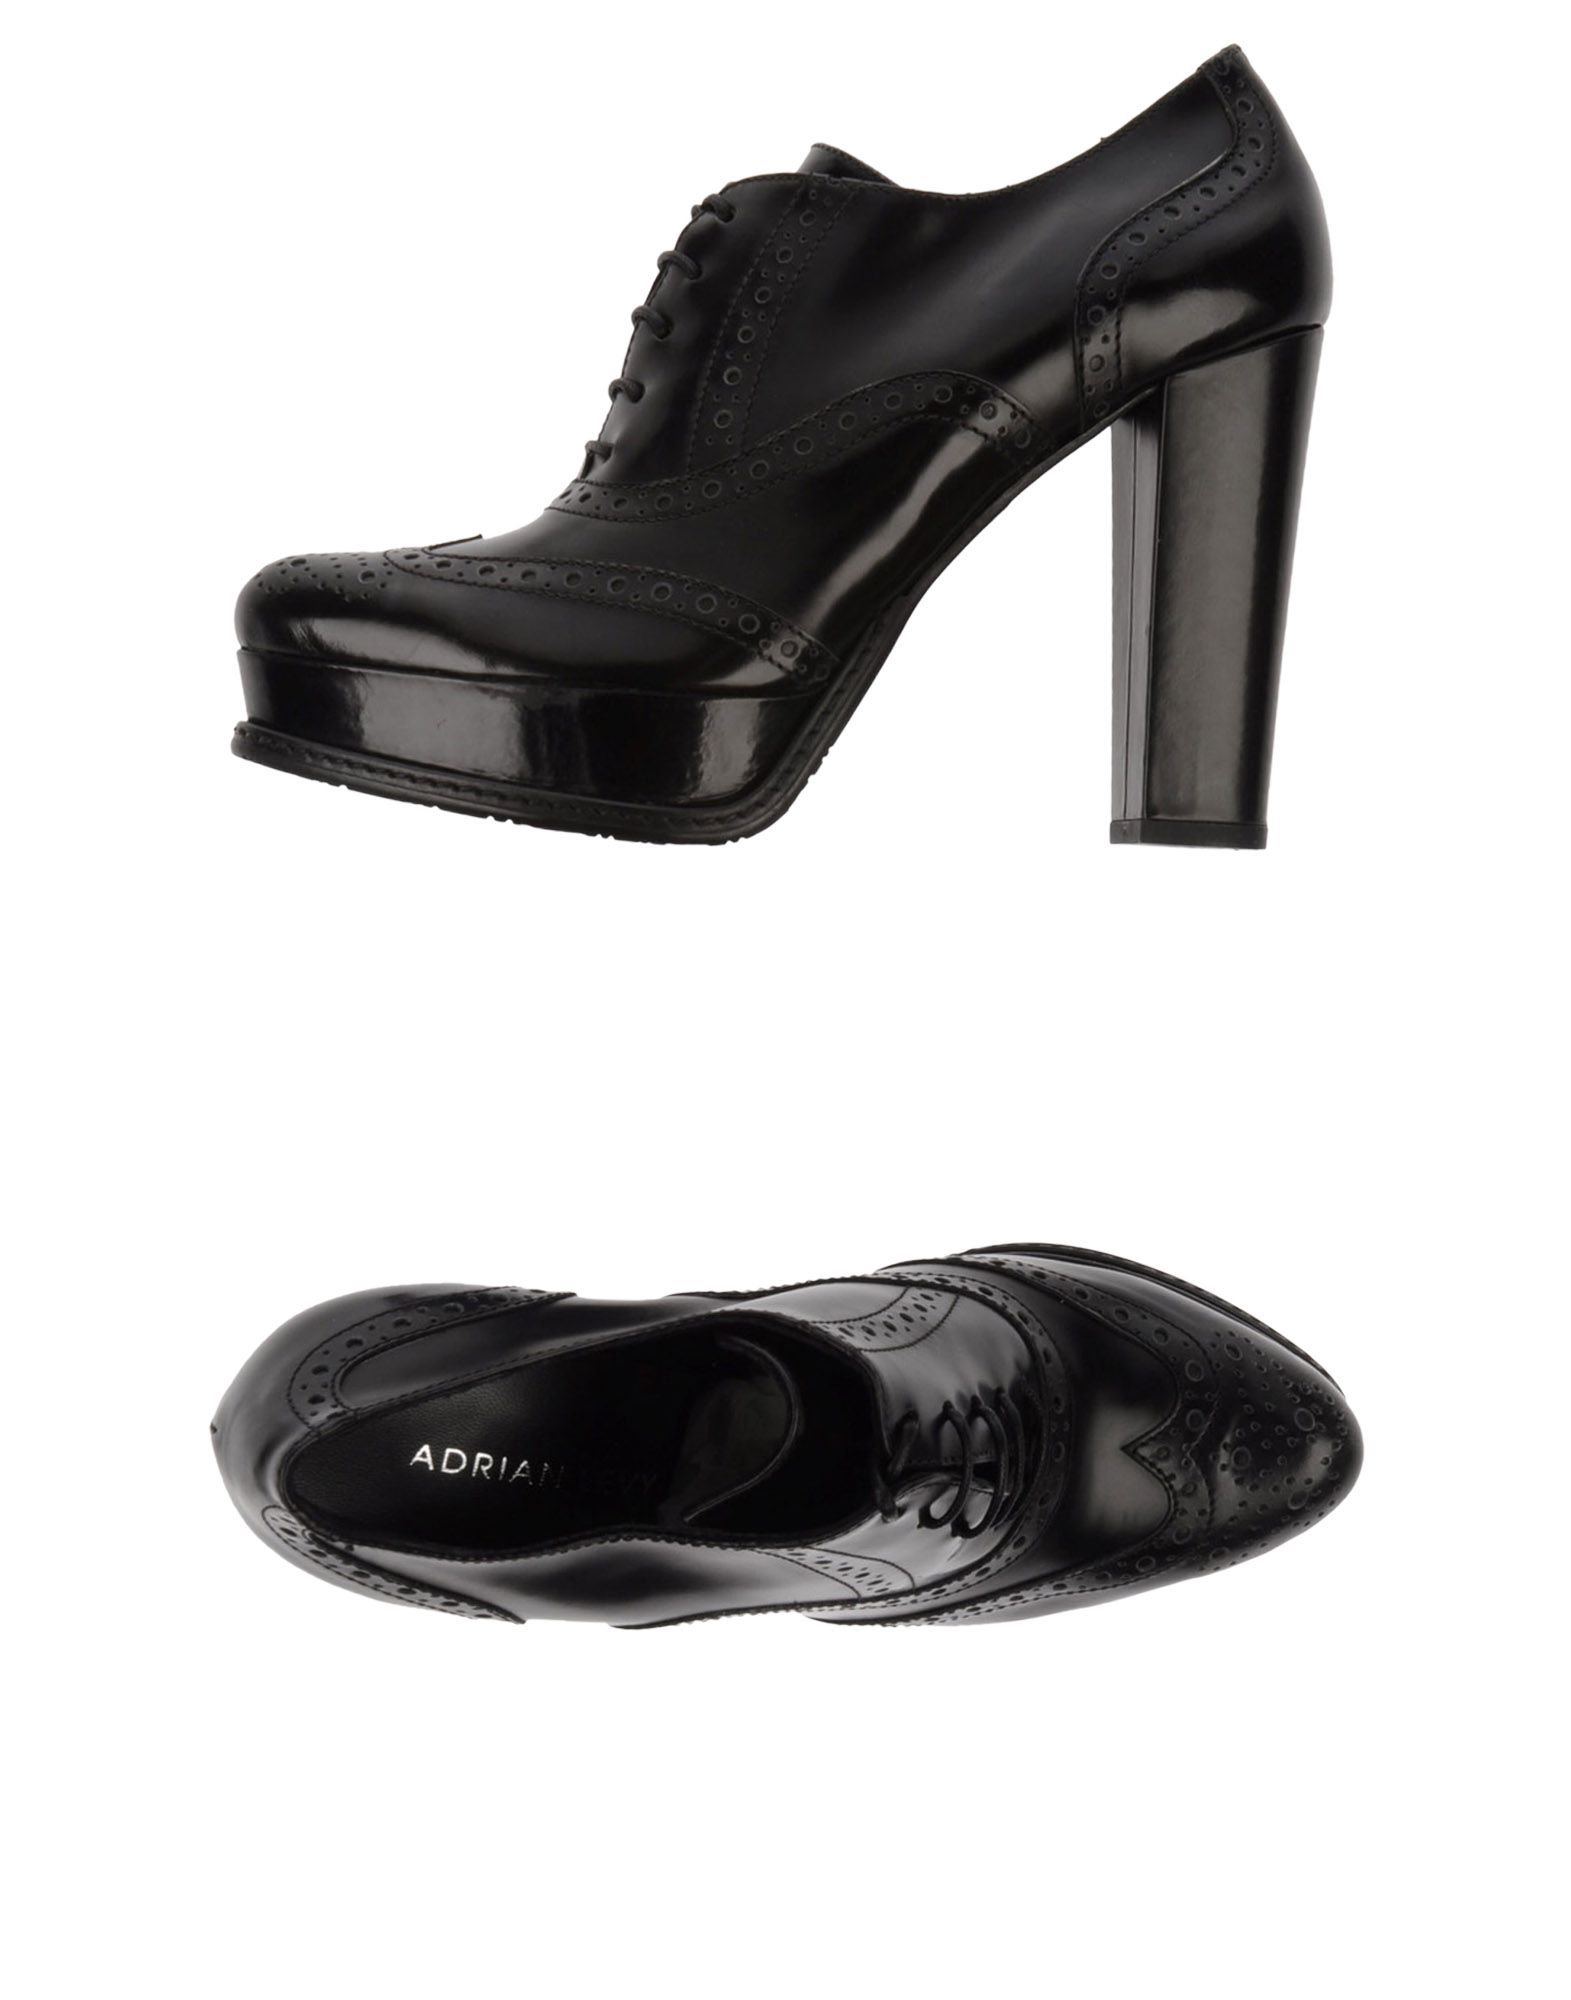 Foto Adrian Levy Zapatos De Cordones Mujer Negro